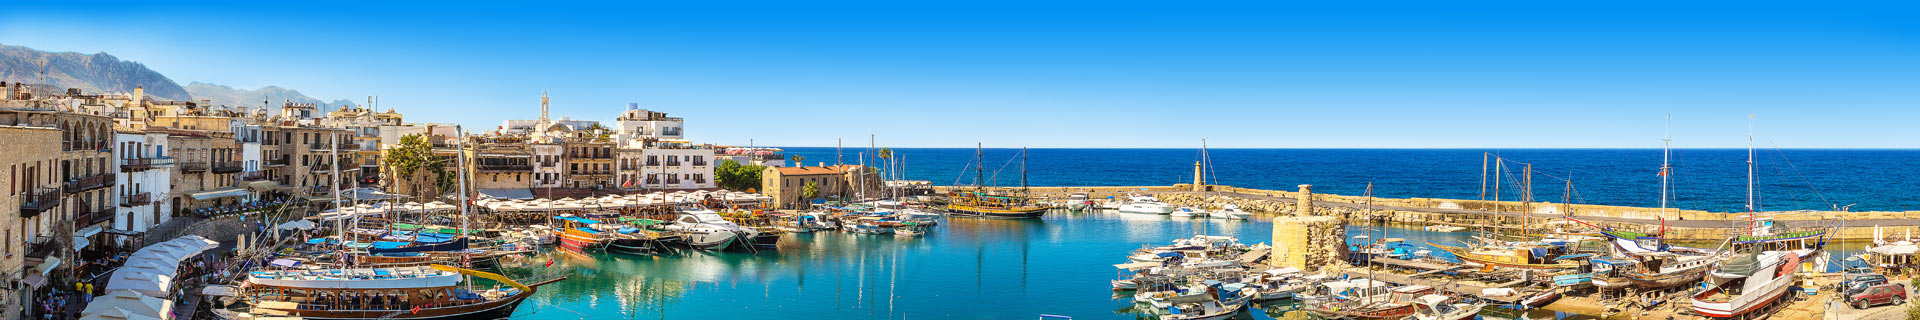 Haven, met boten en uitzicht over de zee in Cyprus